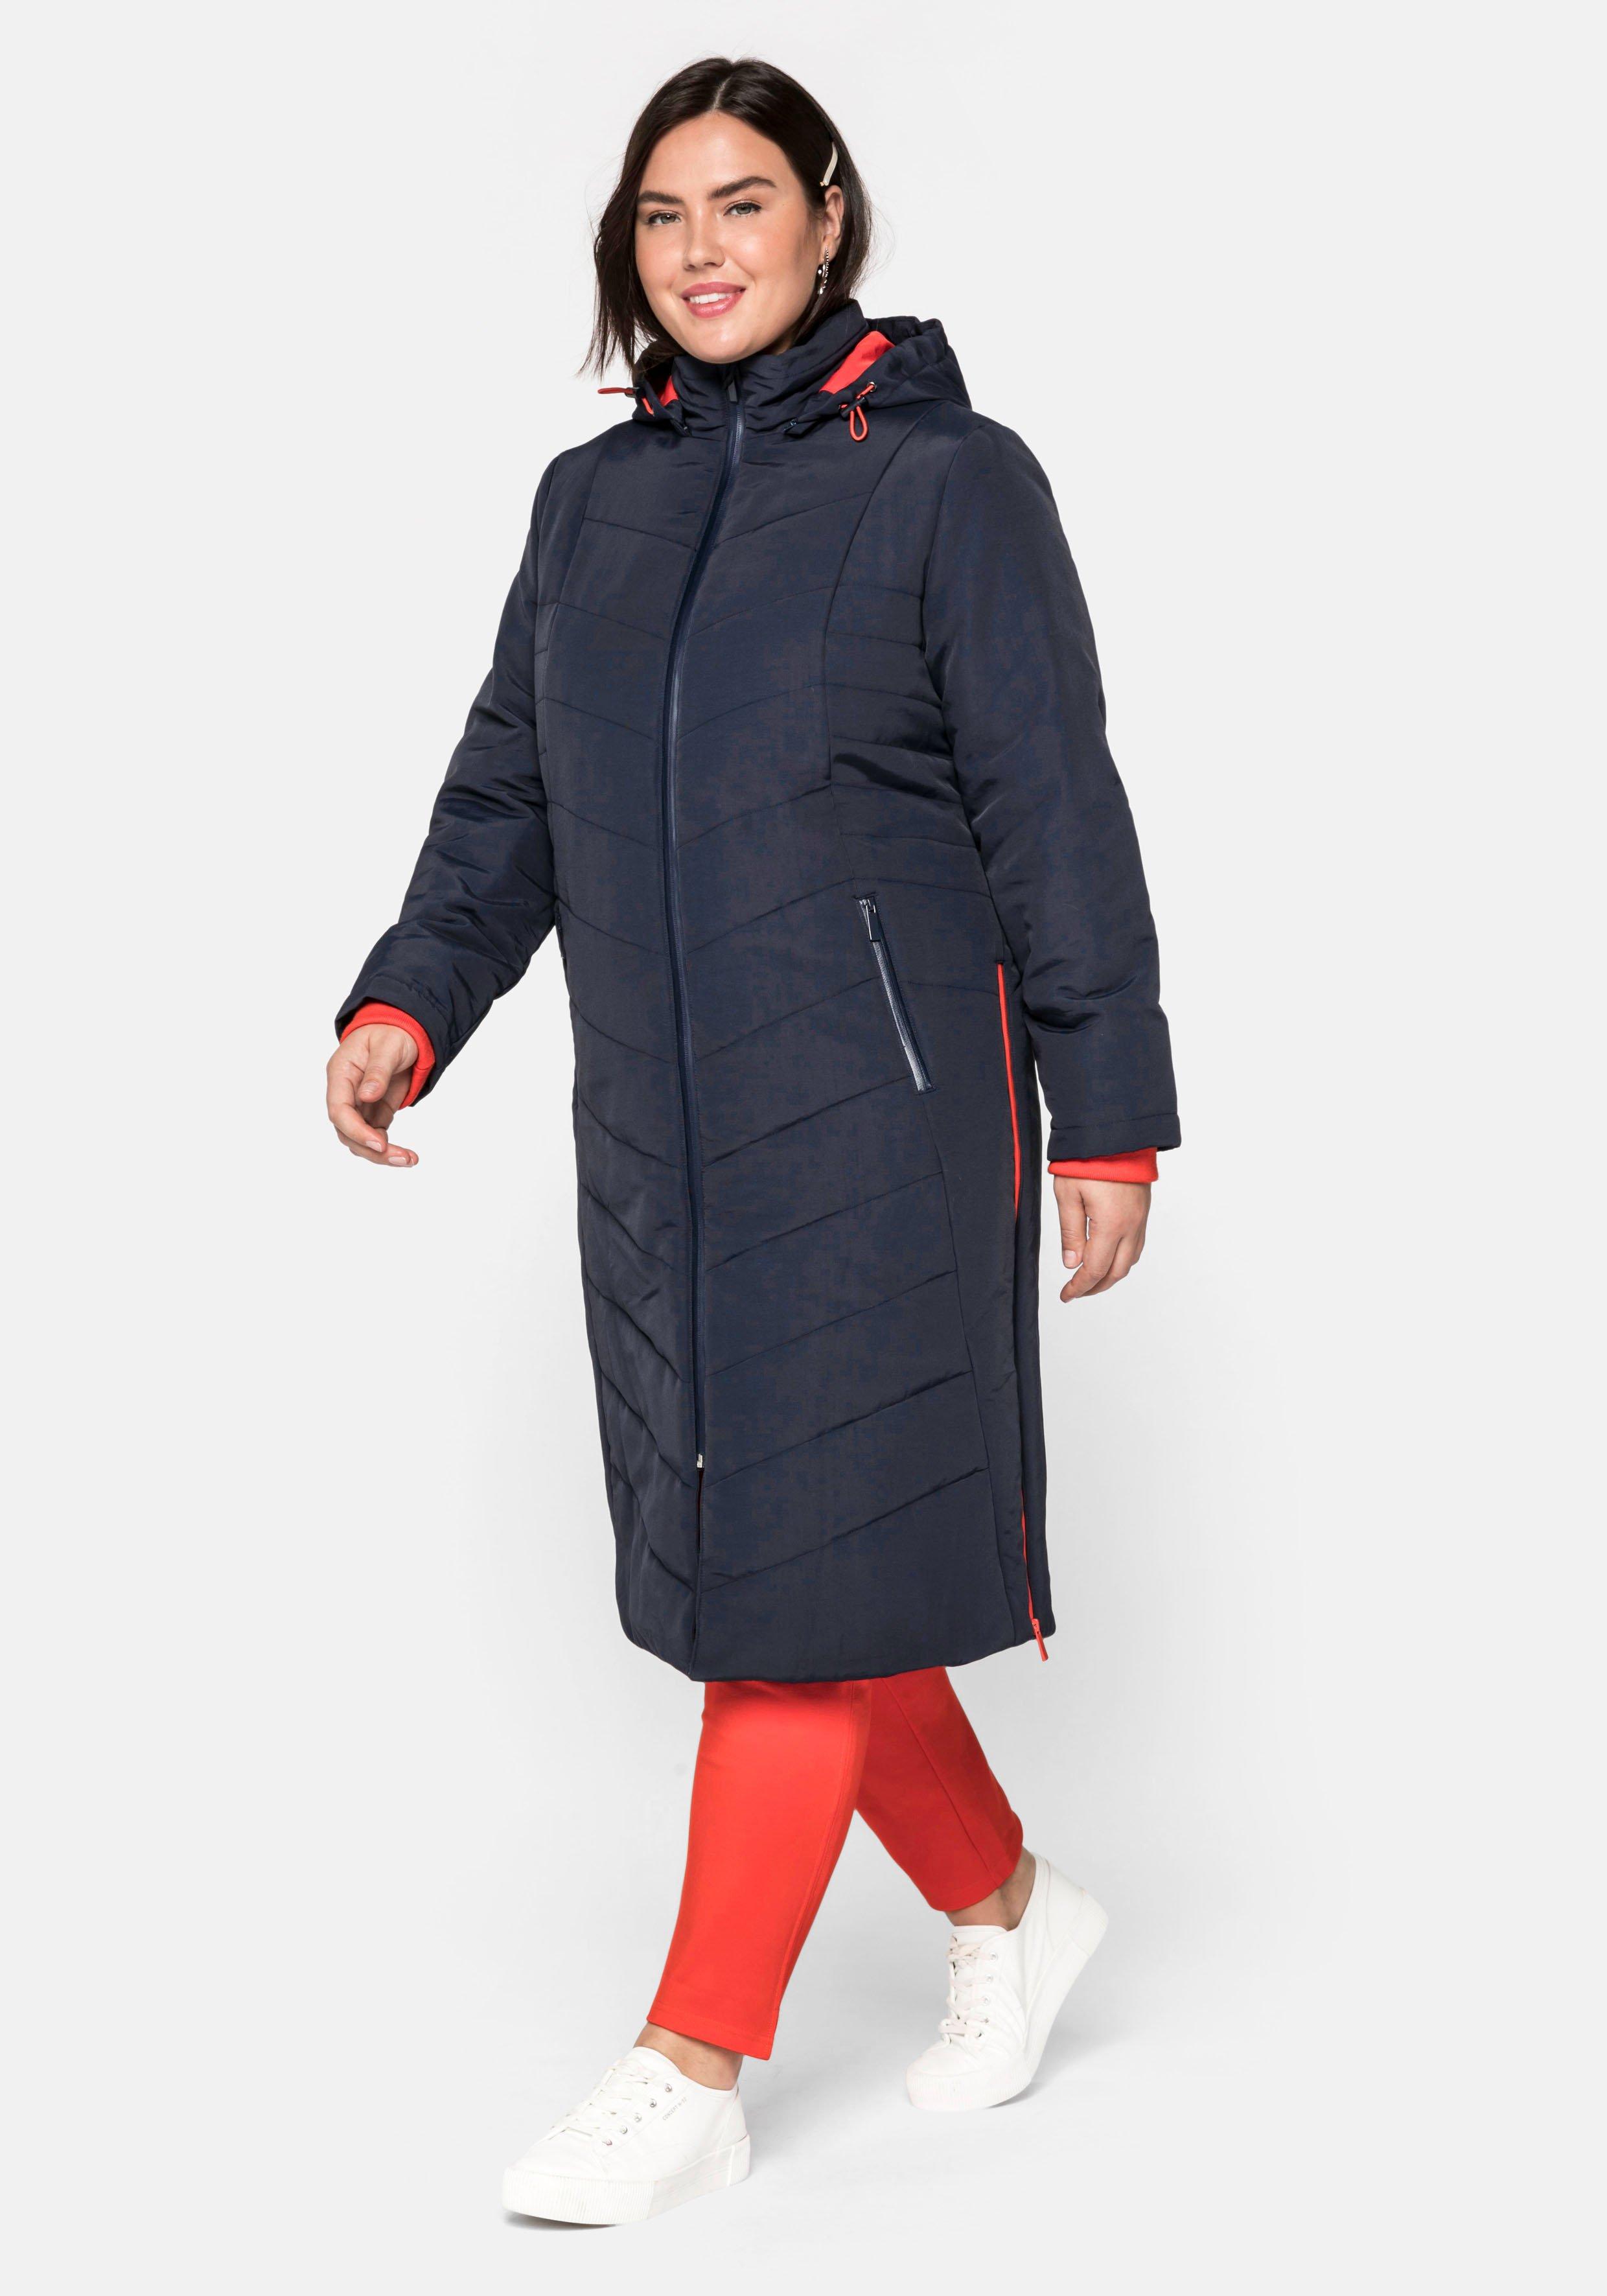 Damen Jacken Plus Mode | große ♥ sheego › blau Mäntel Größen Größe 46 & Size